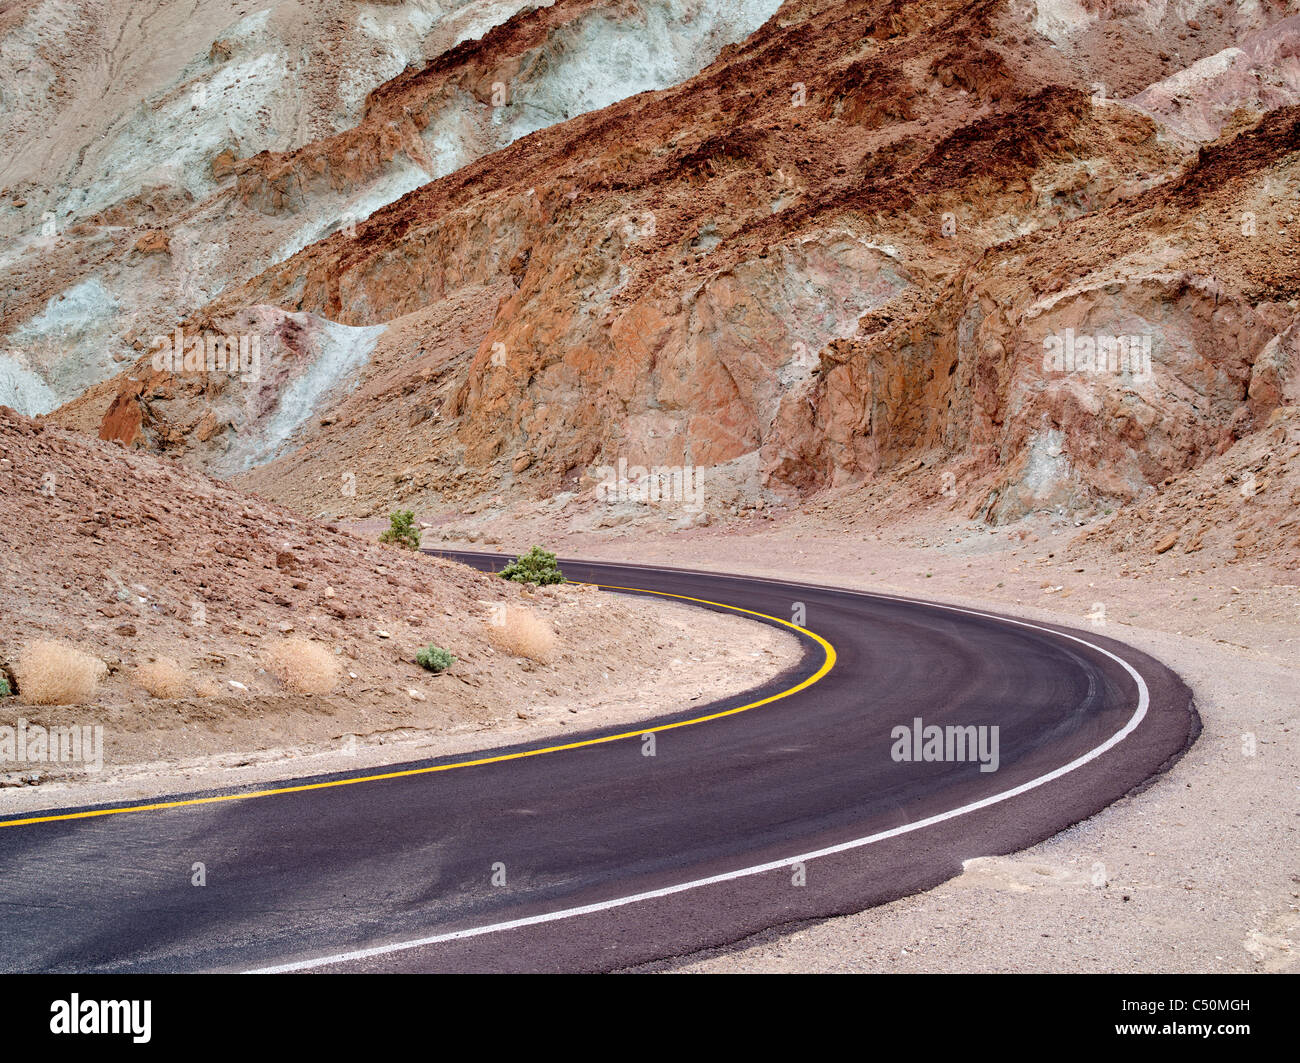 Artistes dur. route. Death Valley National Park, en Californie. Banque D'Images